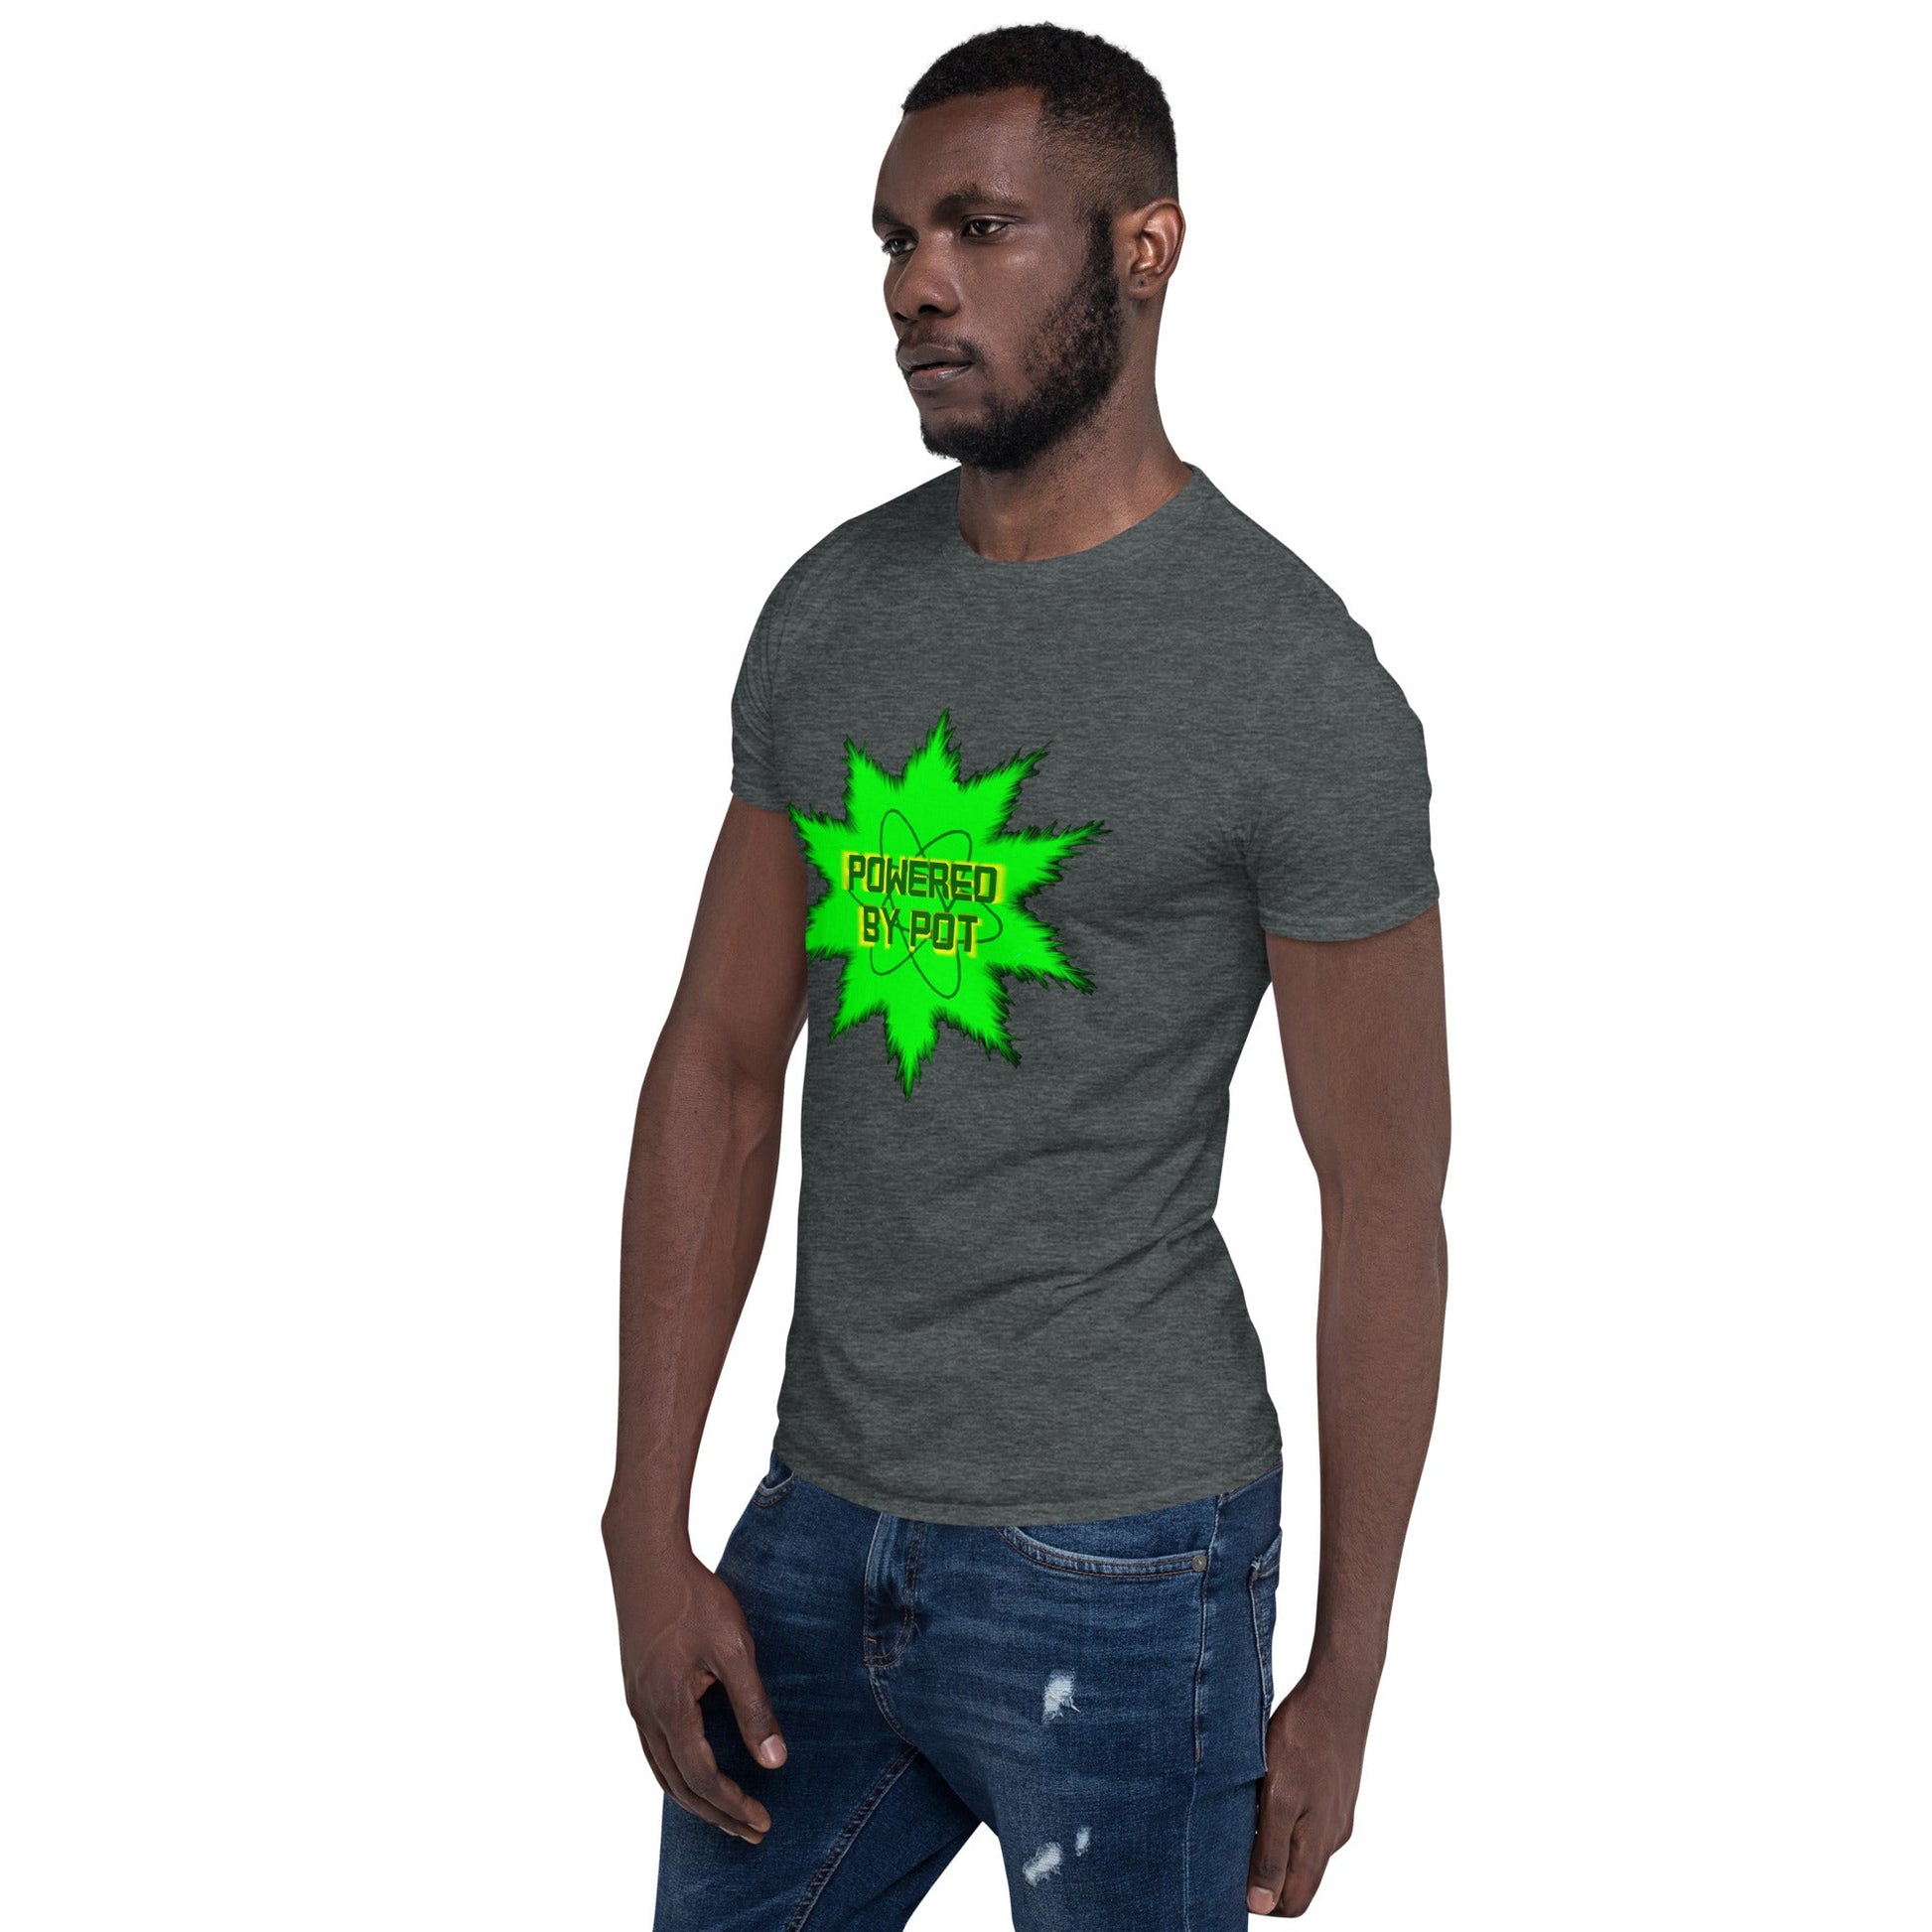 Powered By Pot Short-Sleeve Unisex T-Shirt - Lizard Vigilante